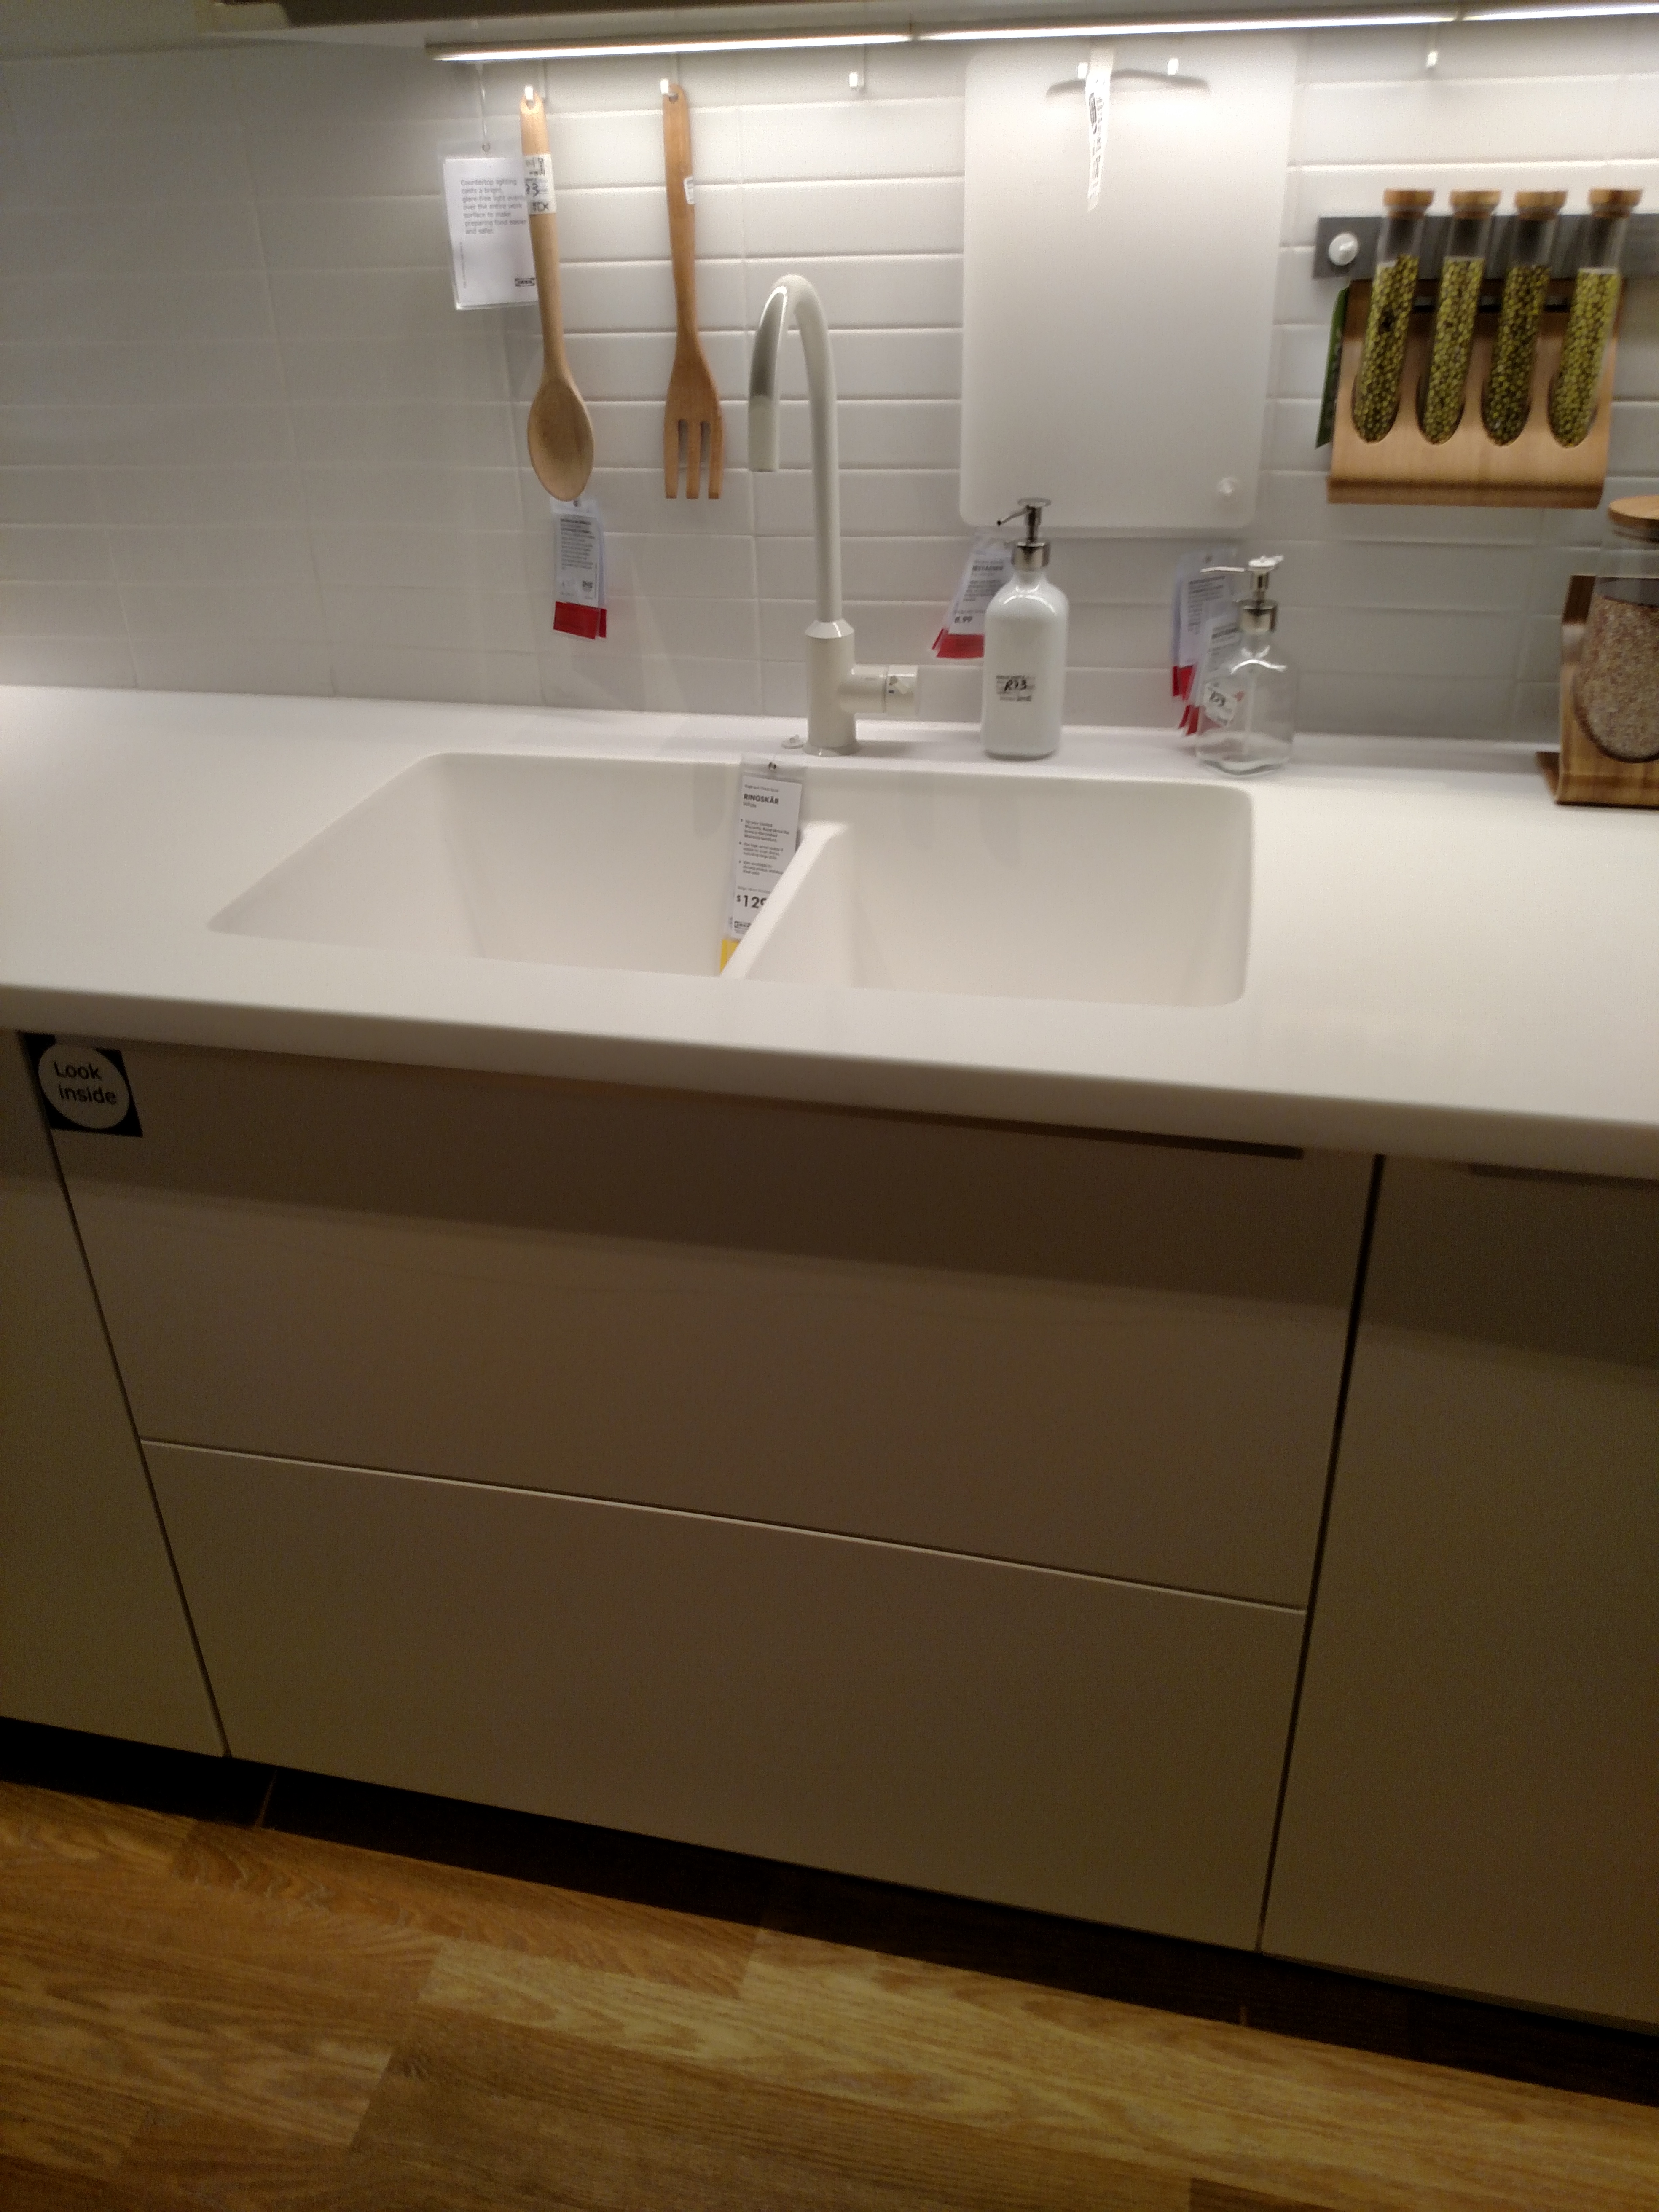 IKEA Kitchen Sink 2 